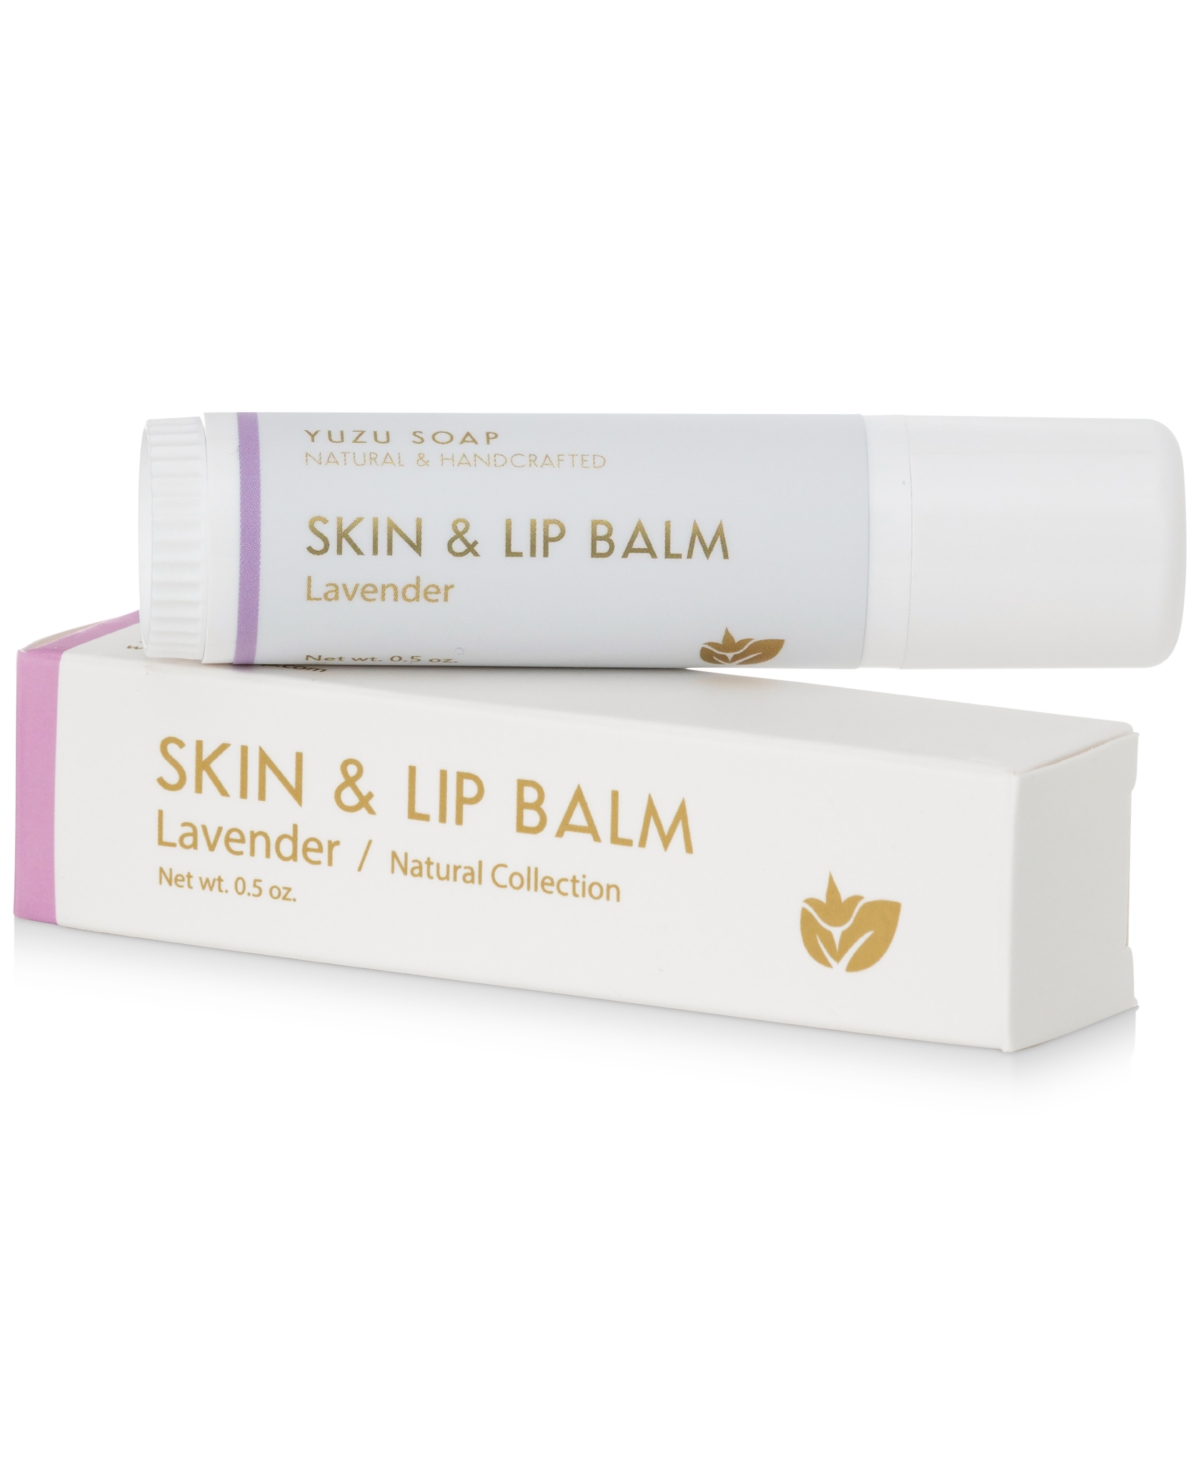 Skin & Lip Balm - Lavender, 0.5-oz.